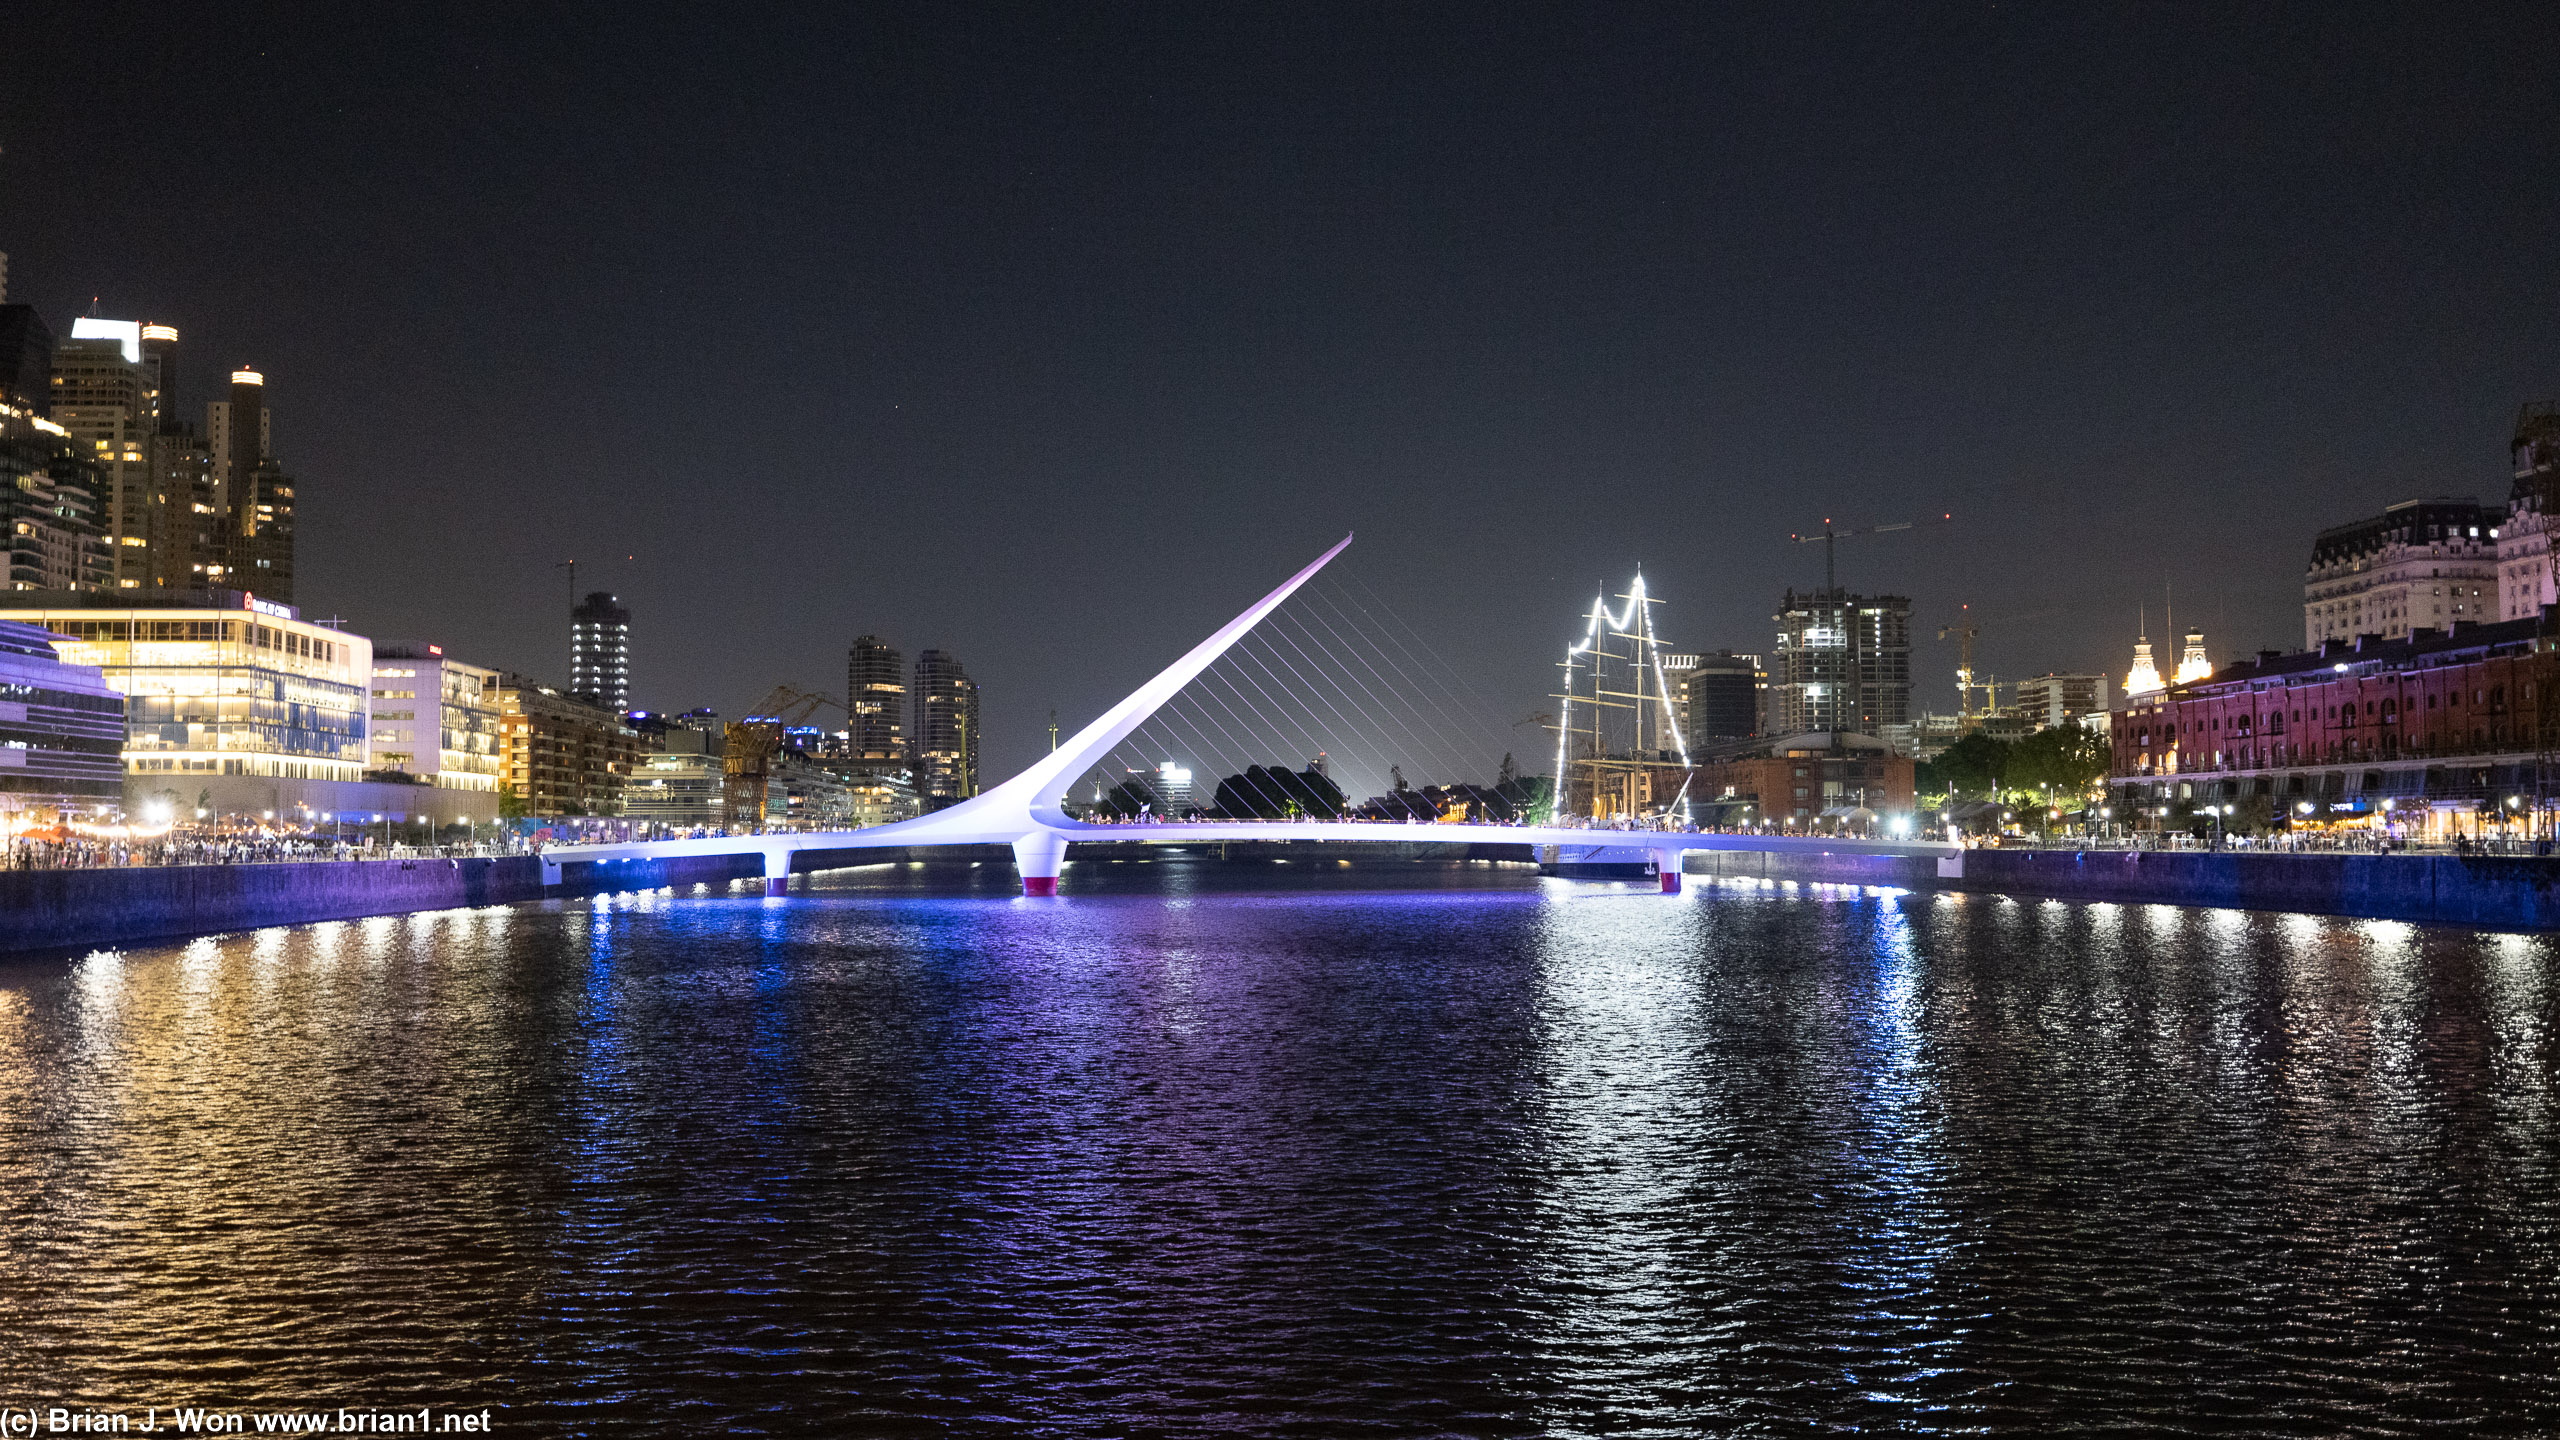 Puente de la Mujer lit up at night.